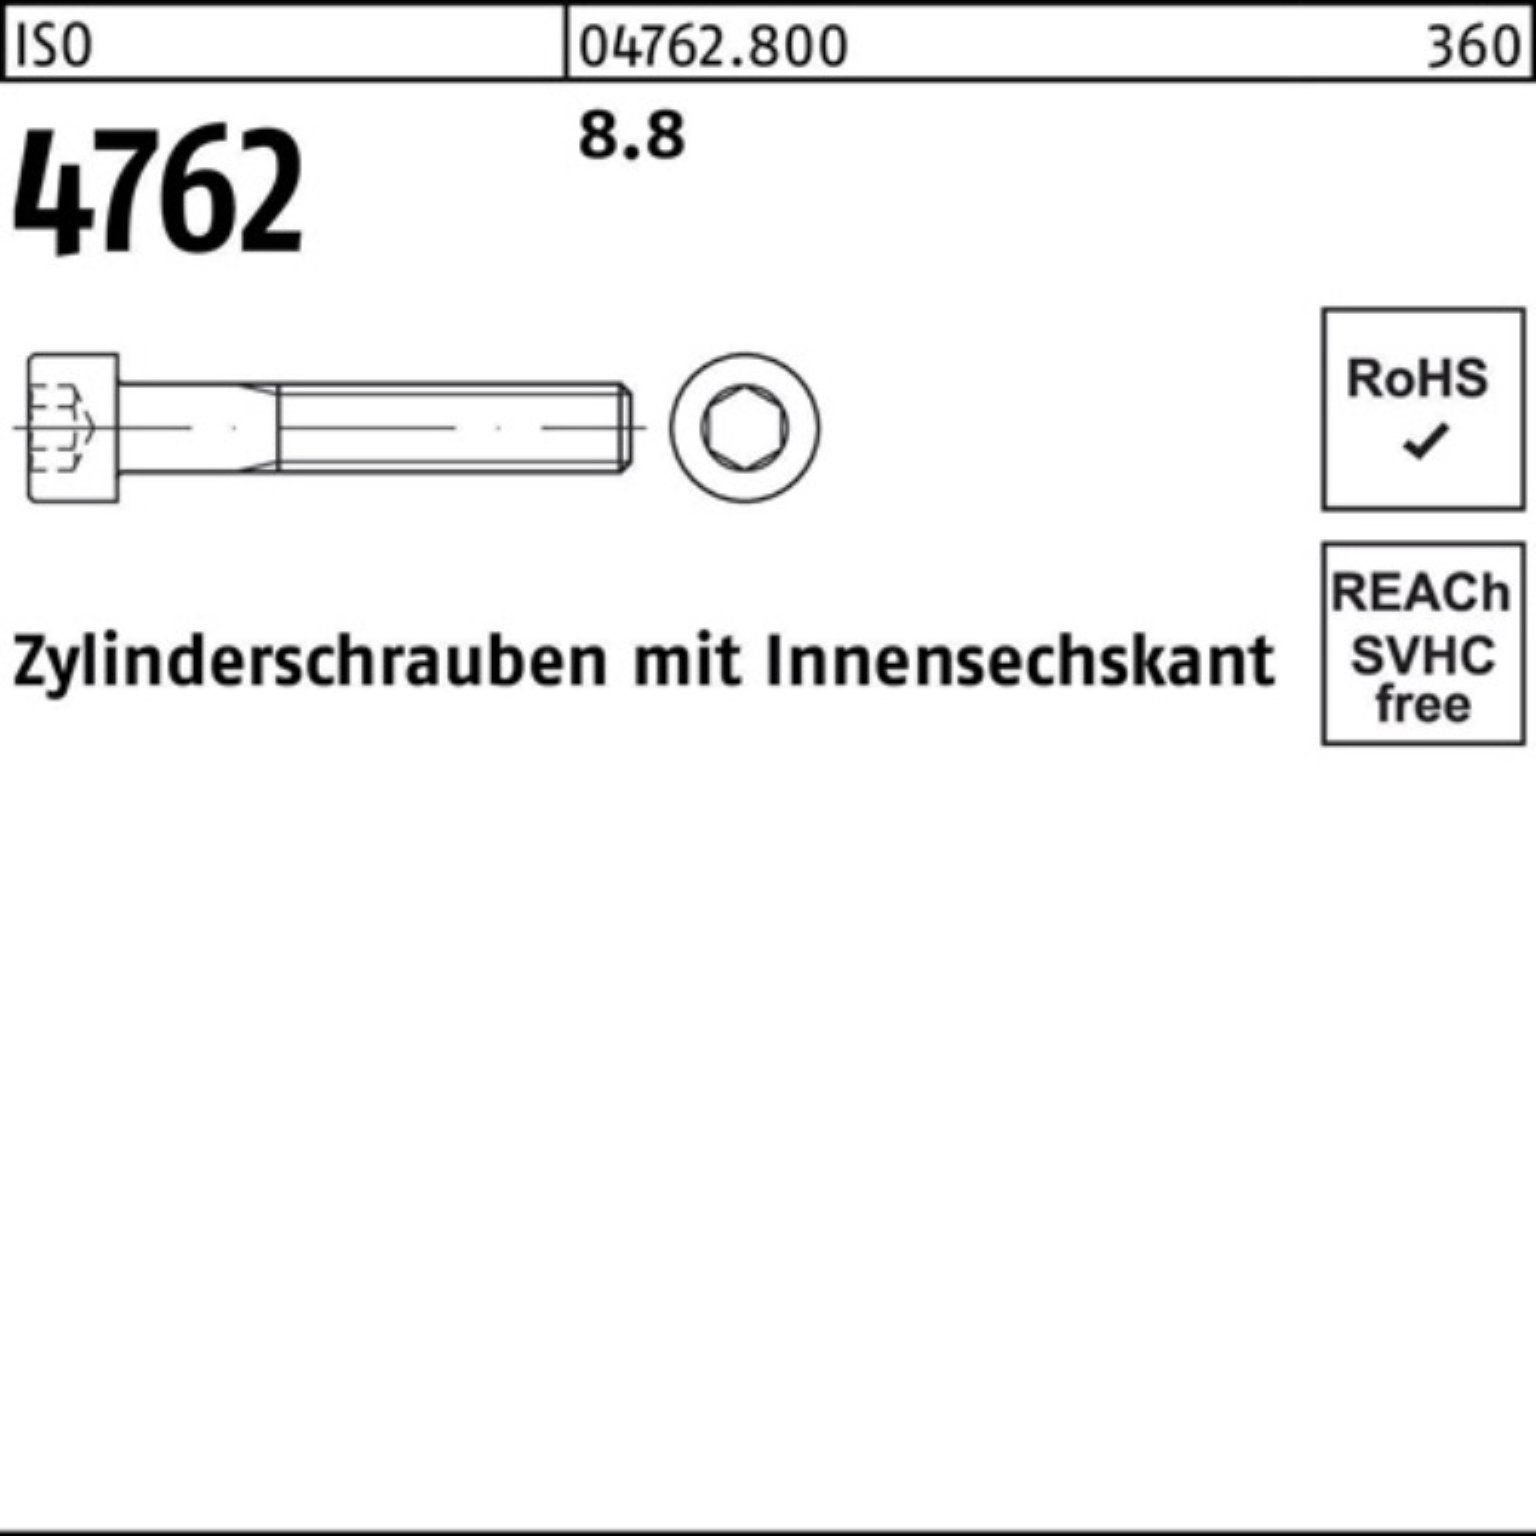 Innen-6kt Reyher ISO Zylinderschraube I Zylinderschraube 4762 100er 390 1 Pack Stück M30x 8.8